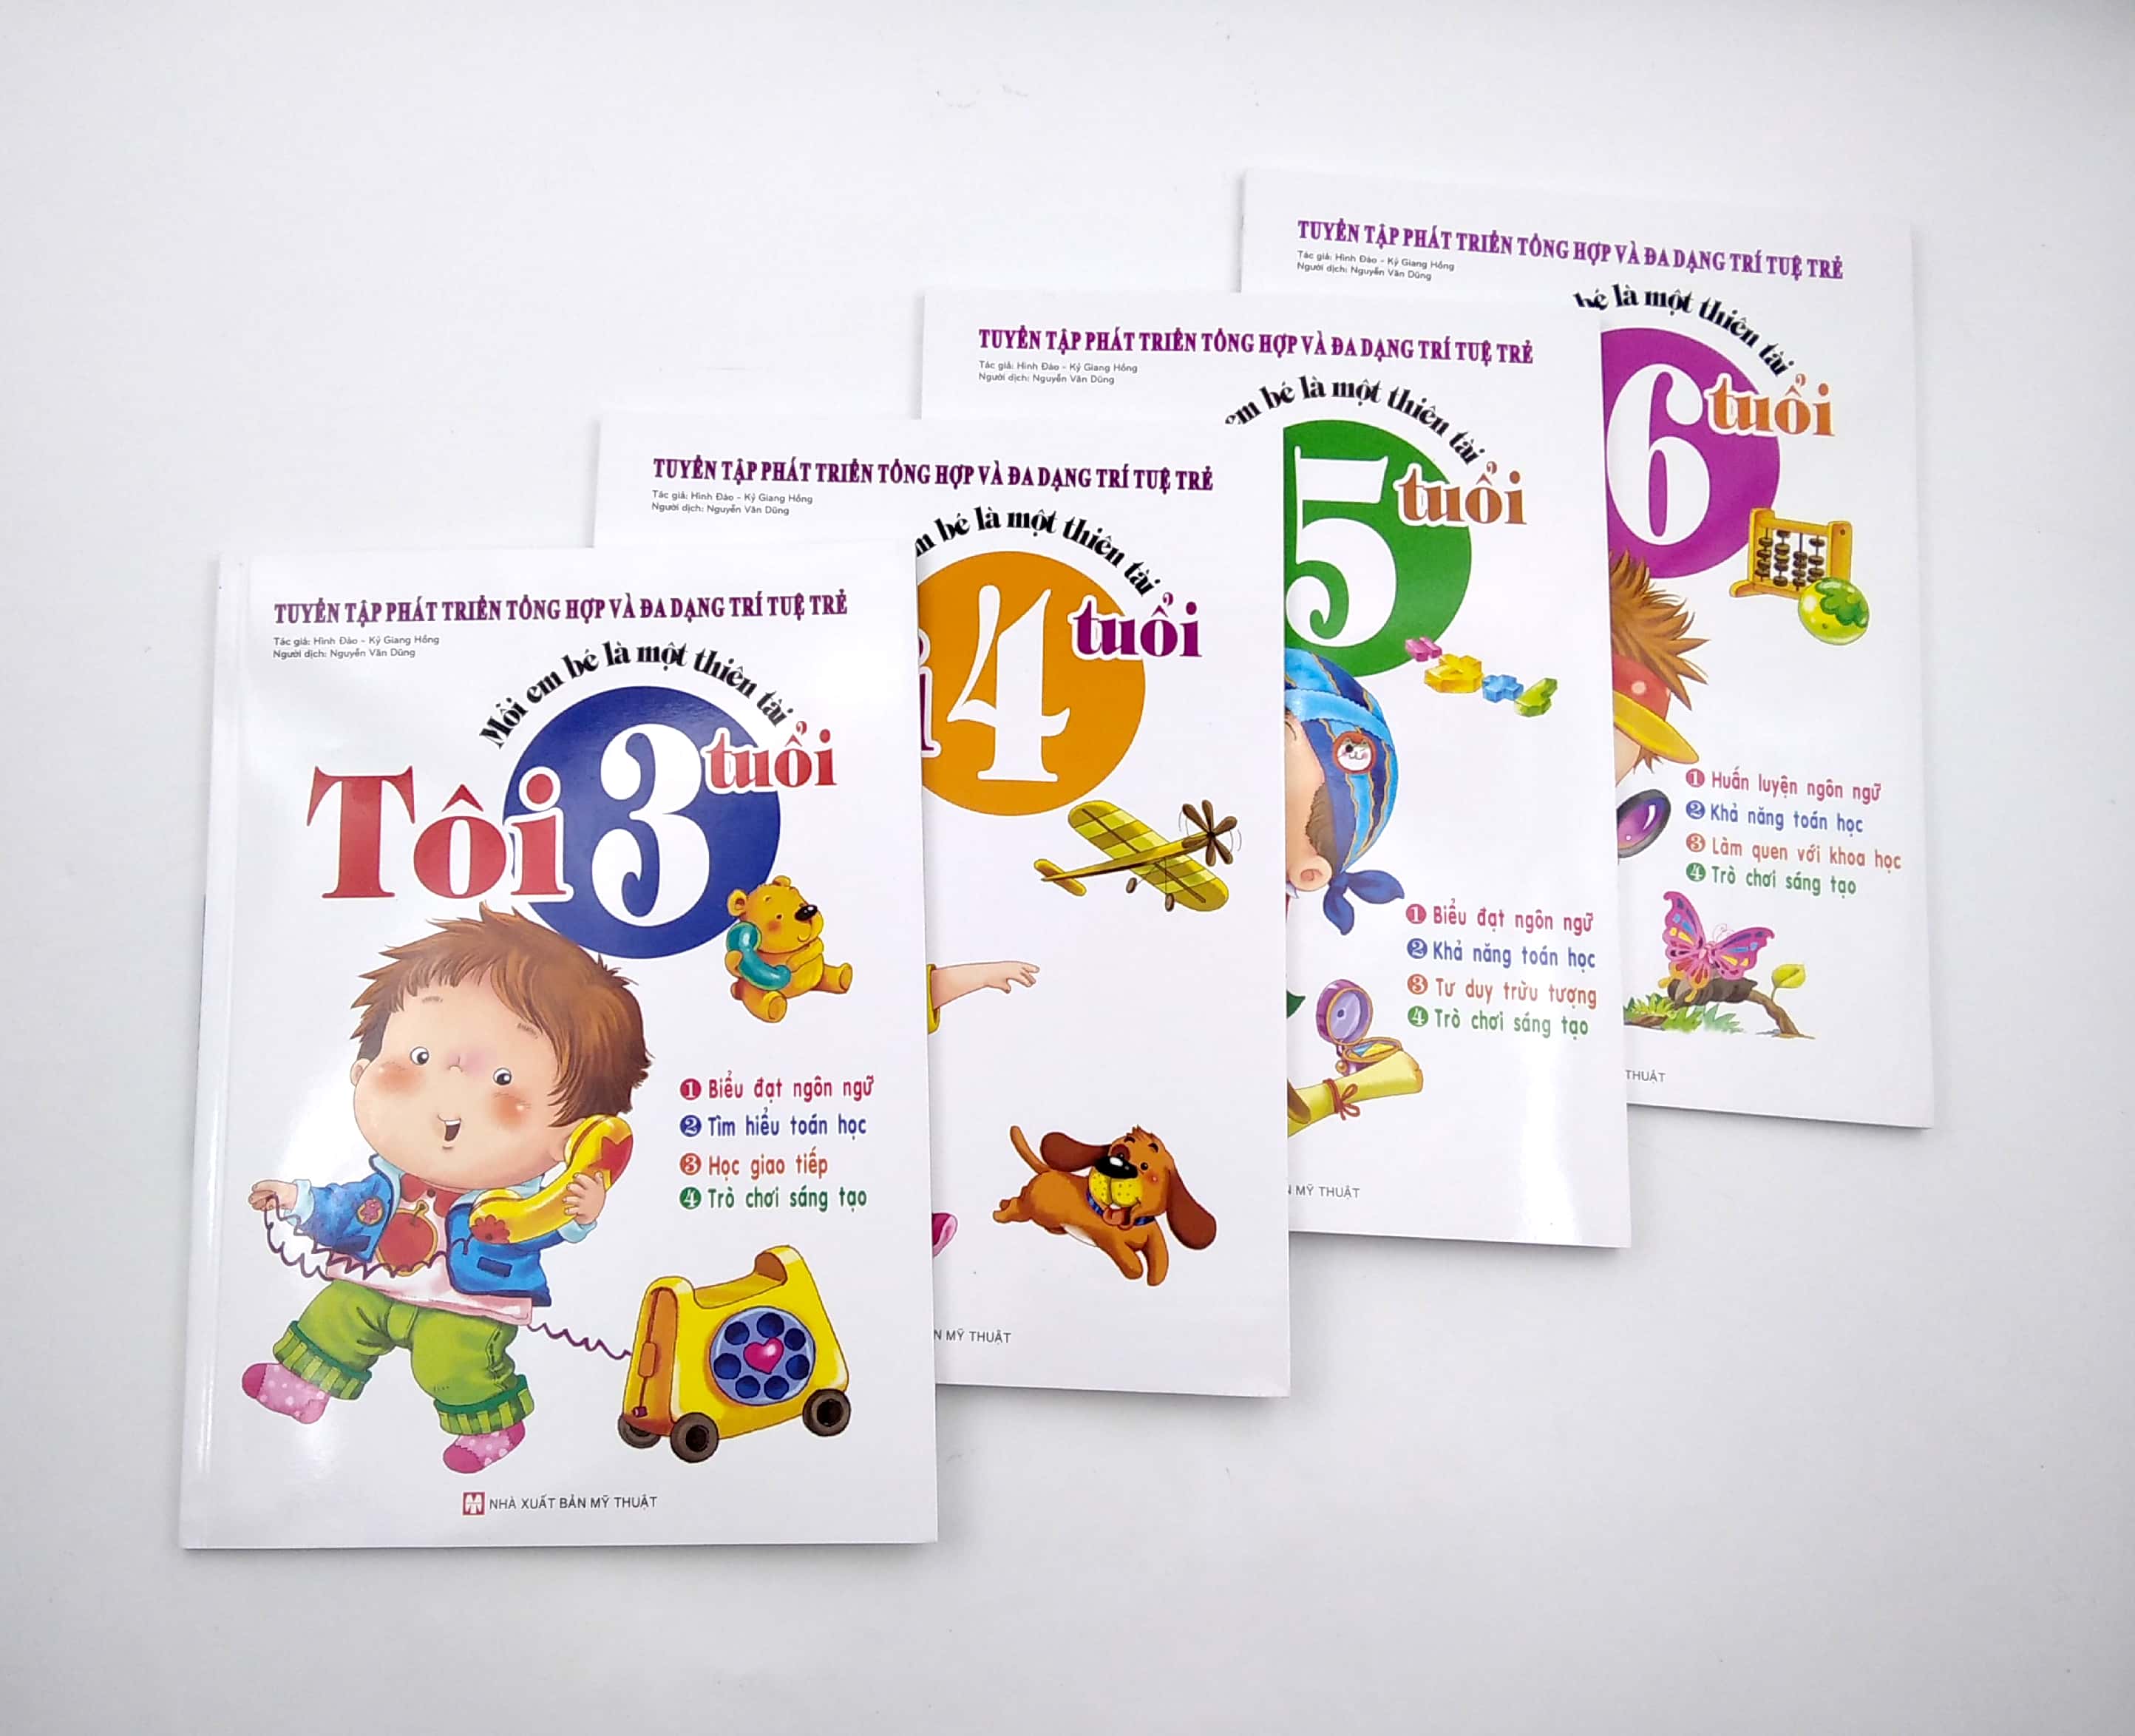 Bộ Sách Mỗi Em Bé Là Một Thiên Tài - Tuyển Tập Phát Triển Tổng Hợp Và Đa Dạng Trí Tuệ Trẻ: Từ 3 Tuổi 4 Tuổi 5 Tuổi 6 Tuổi PDF